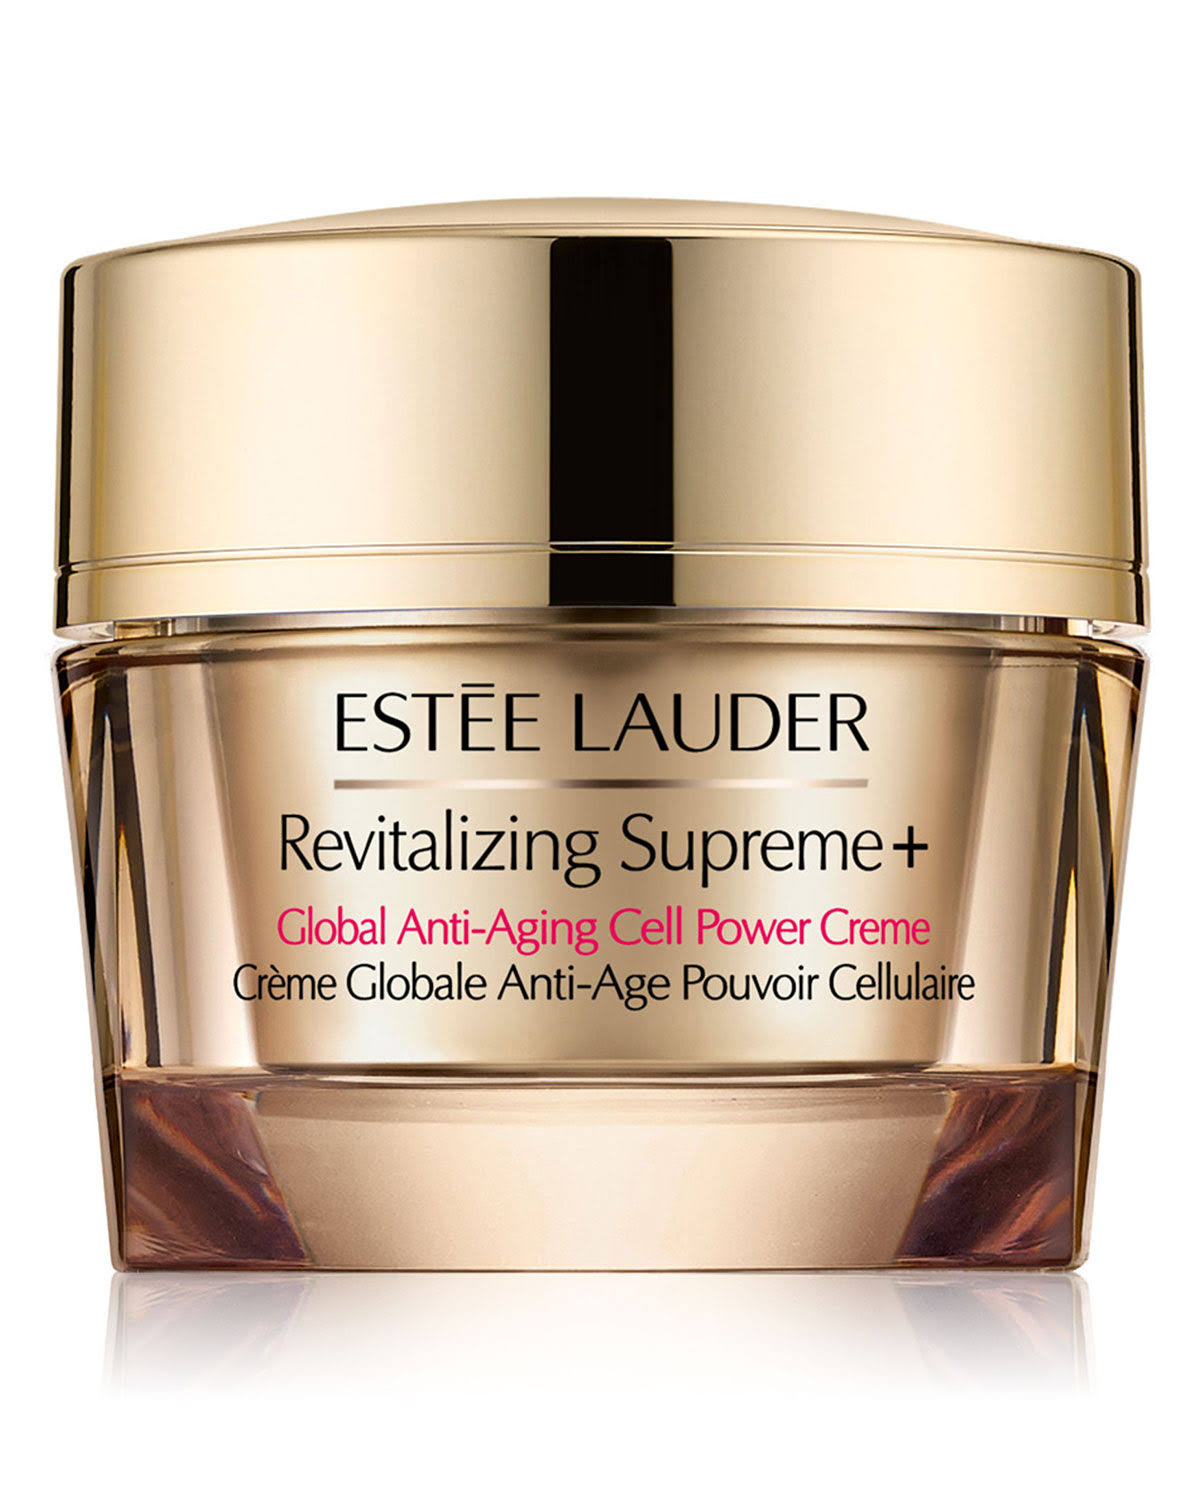 Estee Lauder Revitalizing Supreme Plus Creme - 1.7 oz jar